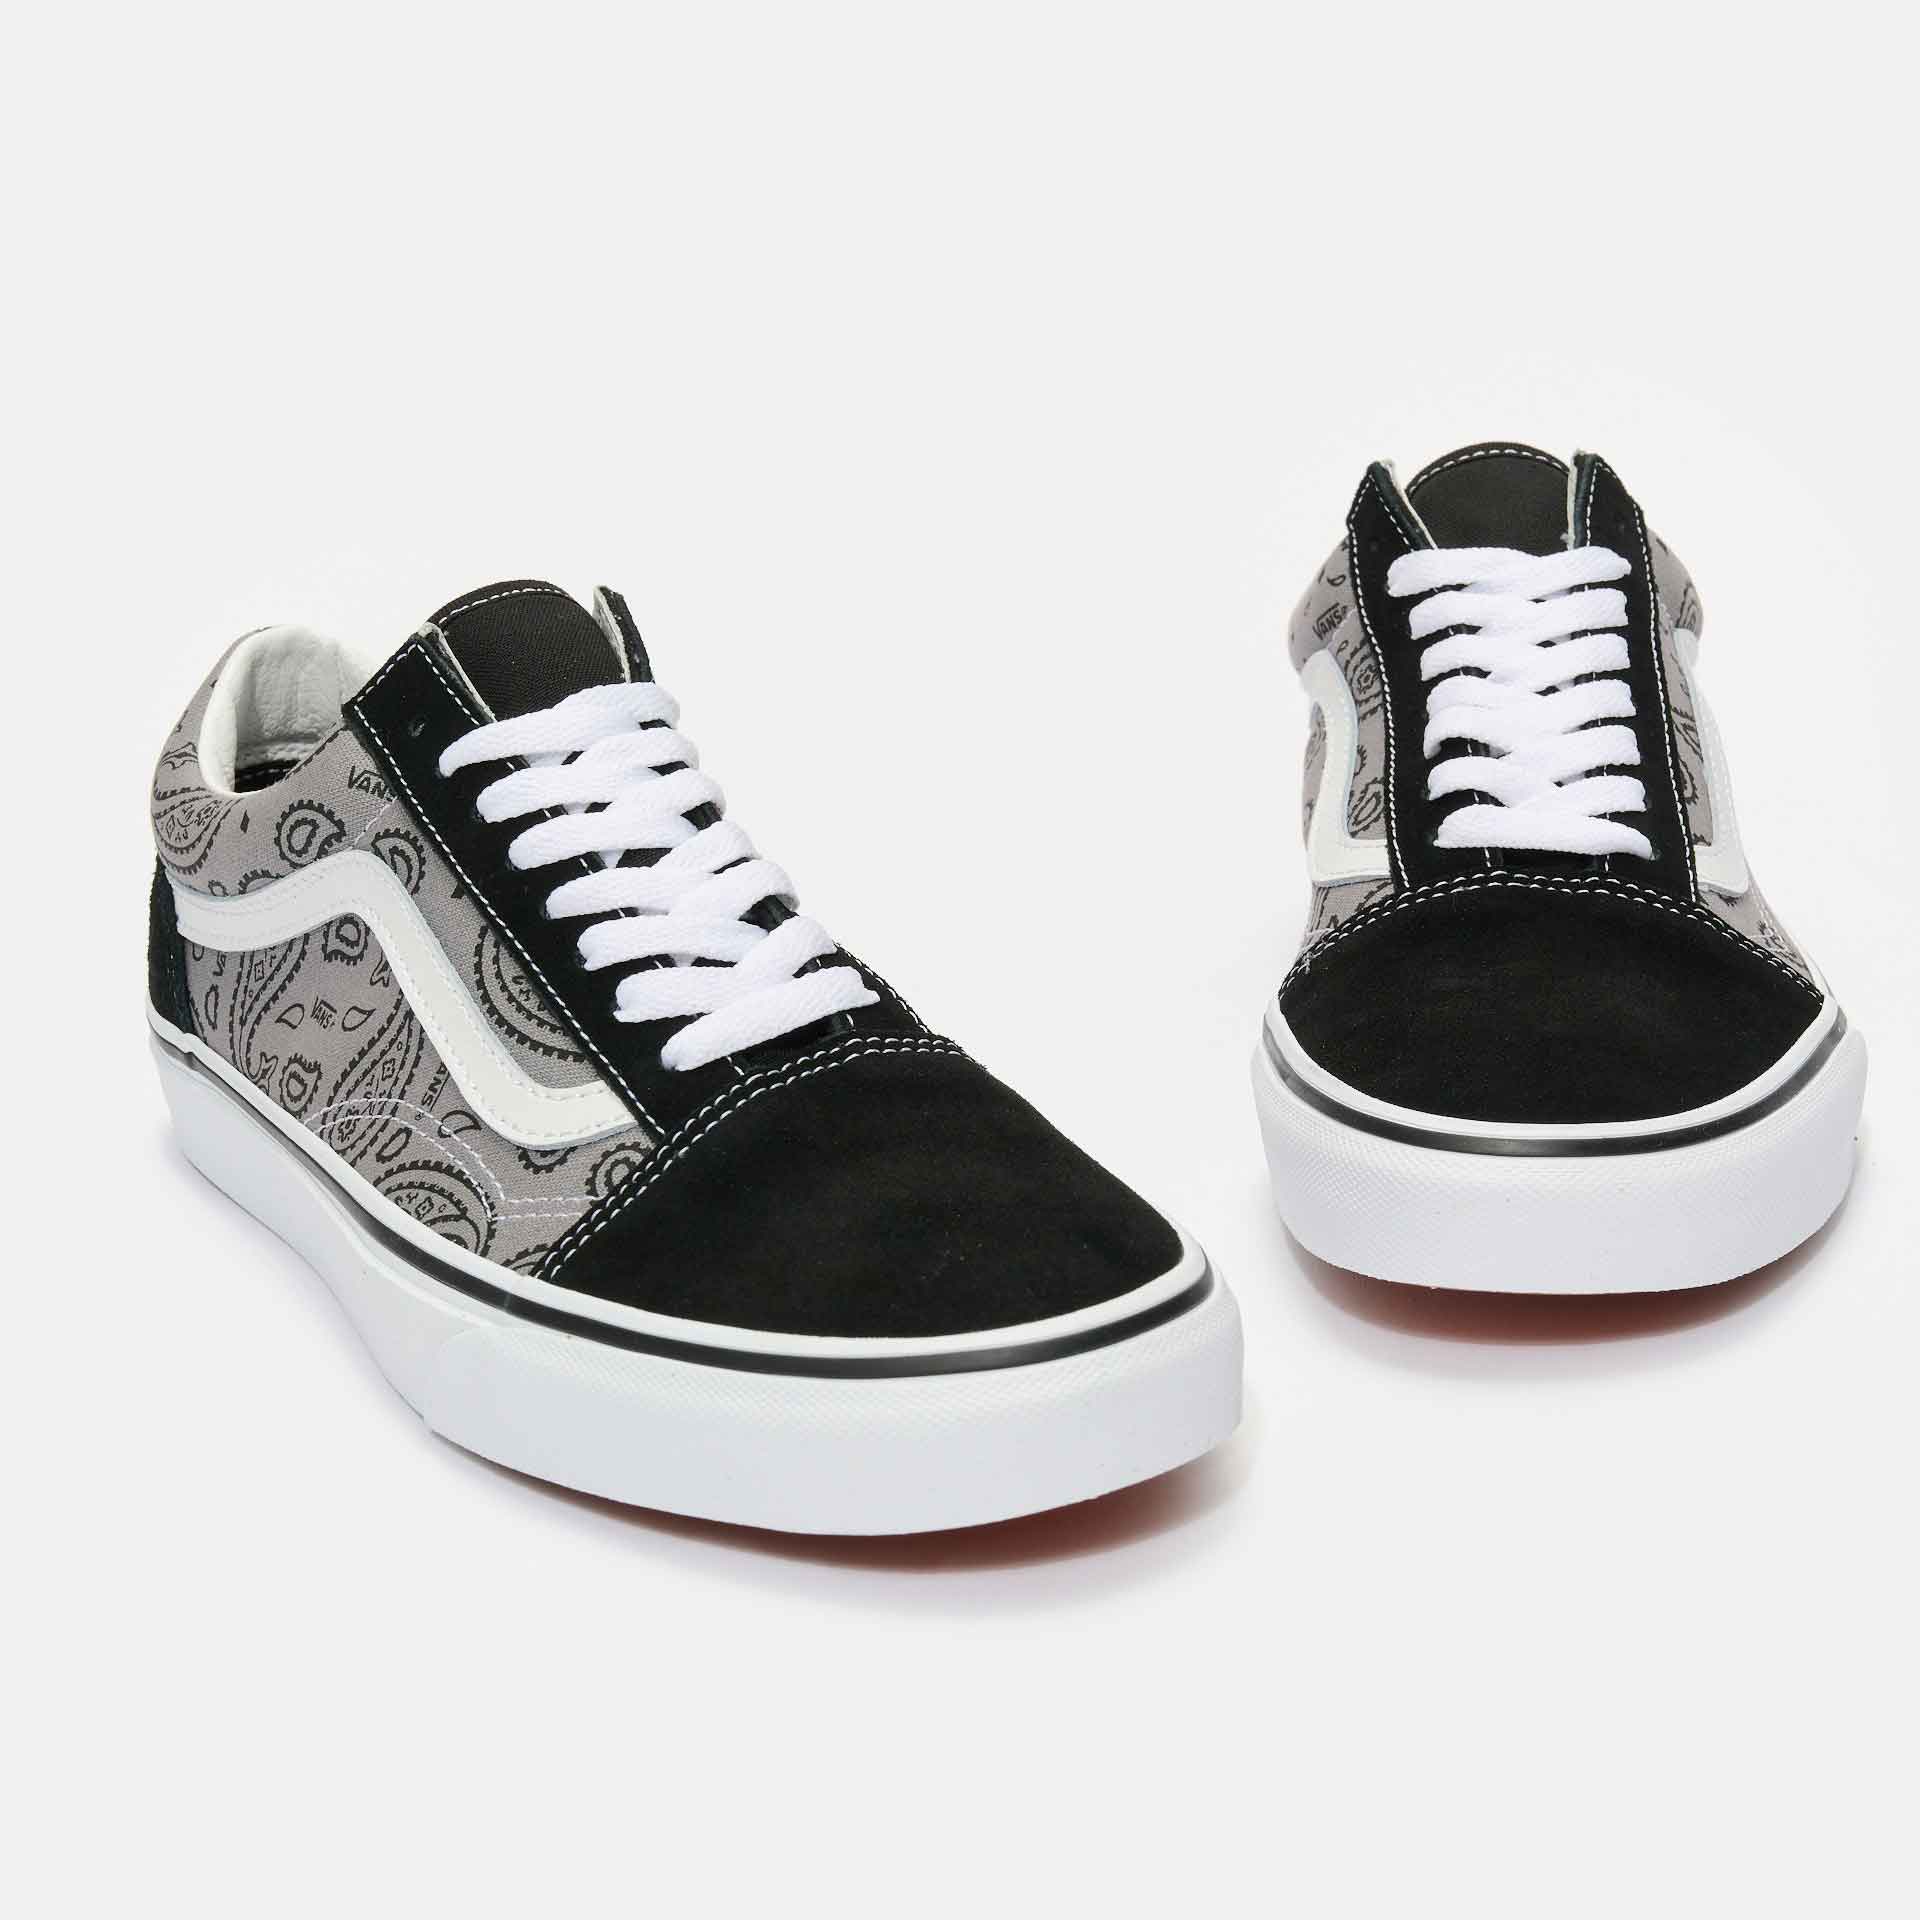 Vans Old Skool Sneaker Paisley Gray/True White